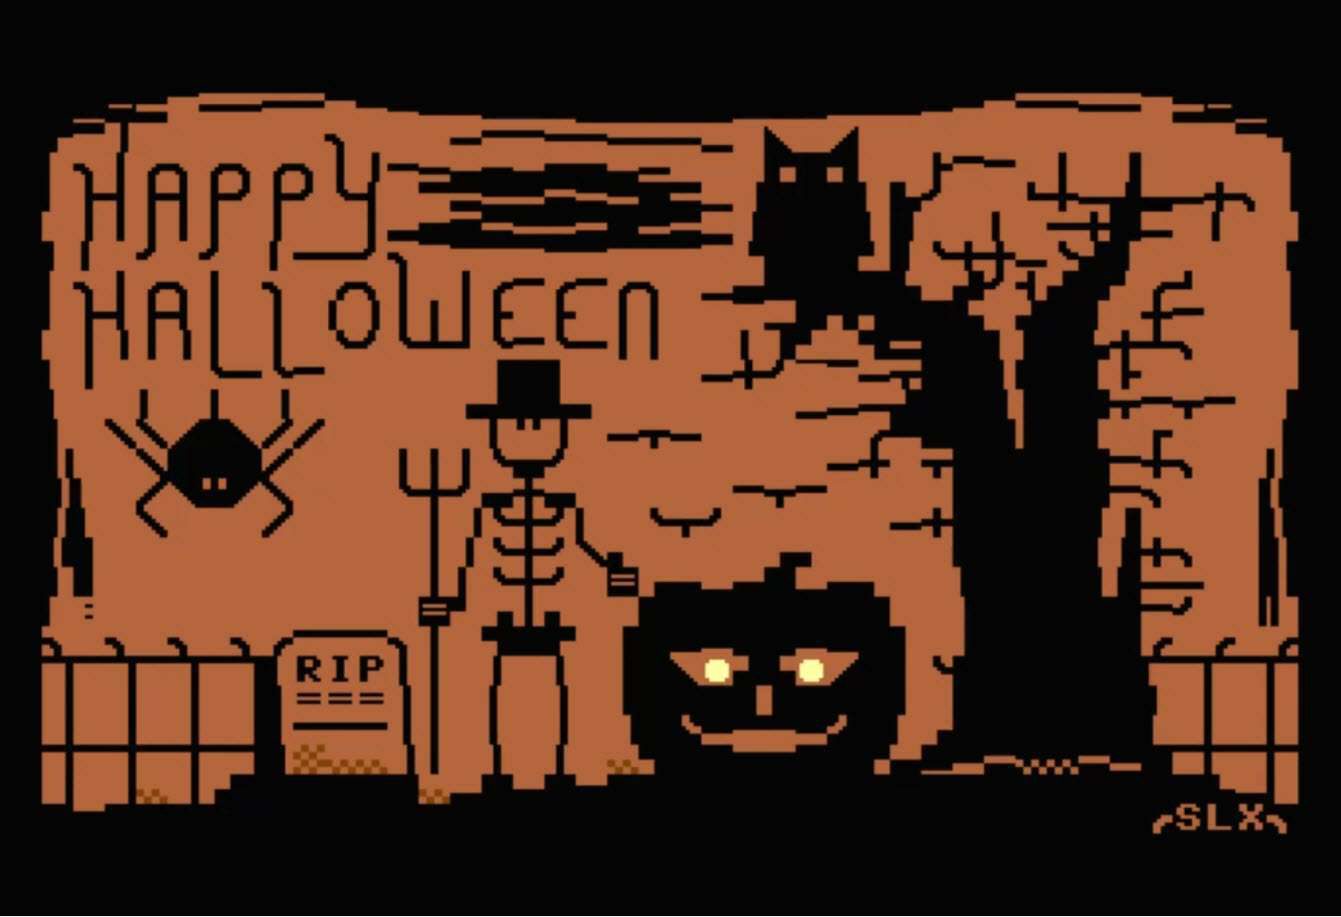 DOWNLOAD: C64 Halloween 2019 Screensaver